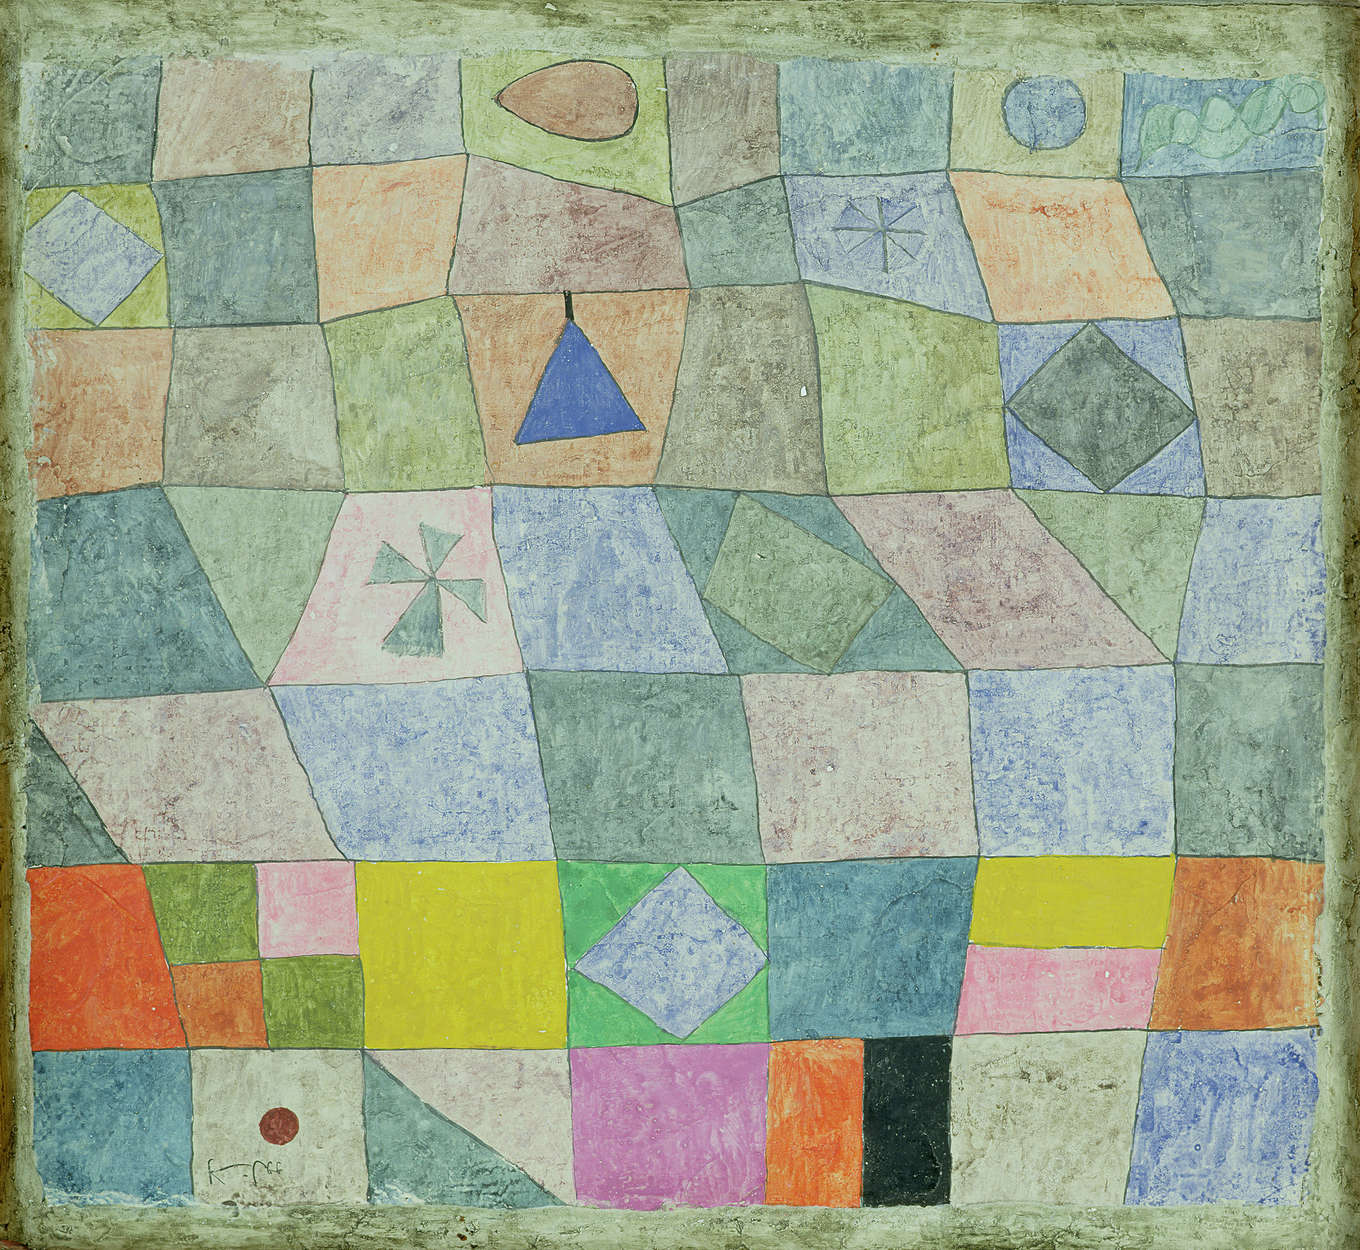             Fotomurali "Friendly Play" di Paul Klee
        